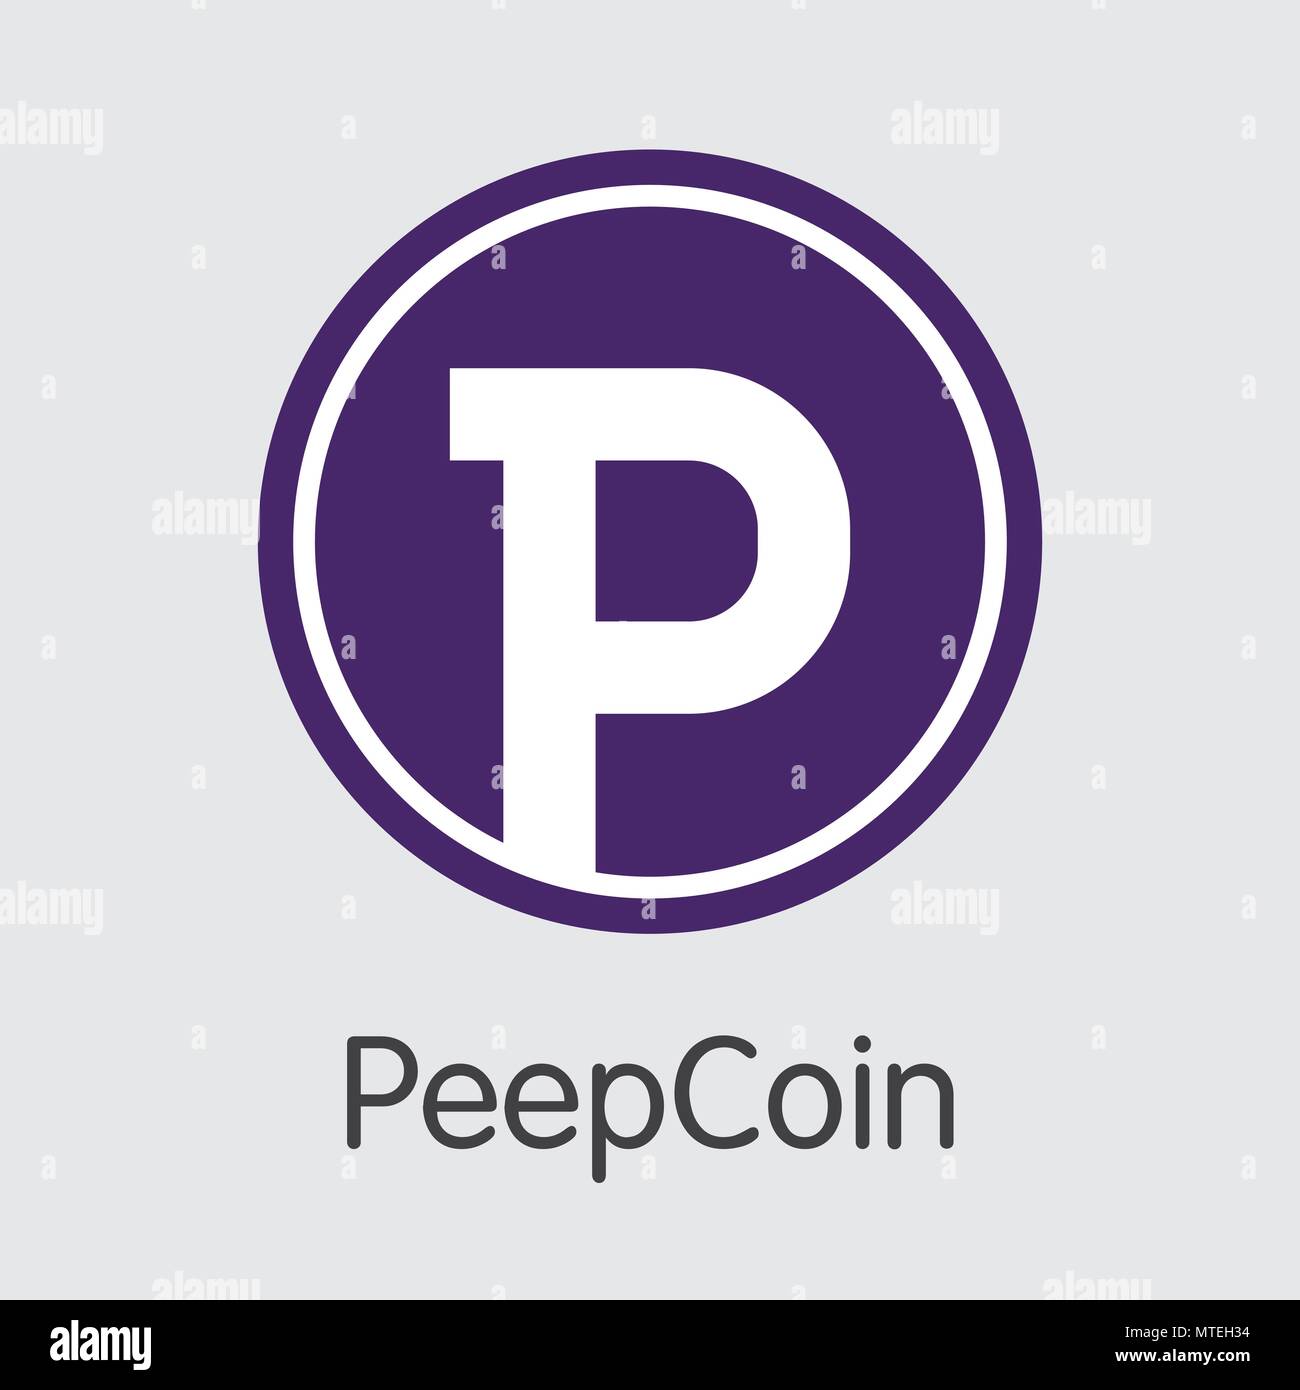 Peepcoin Crypto Currency. Vector PCN Pictogram Symbol. Stock Vector